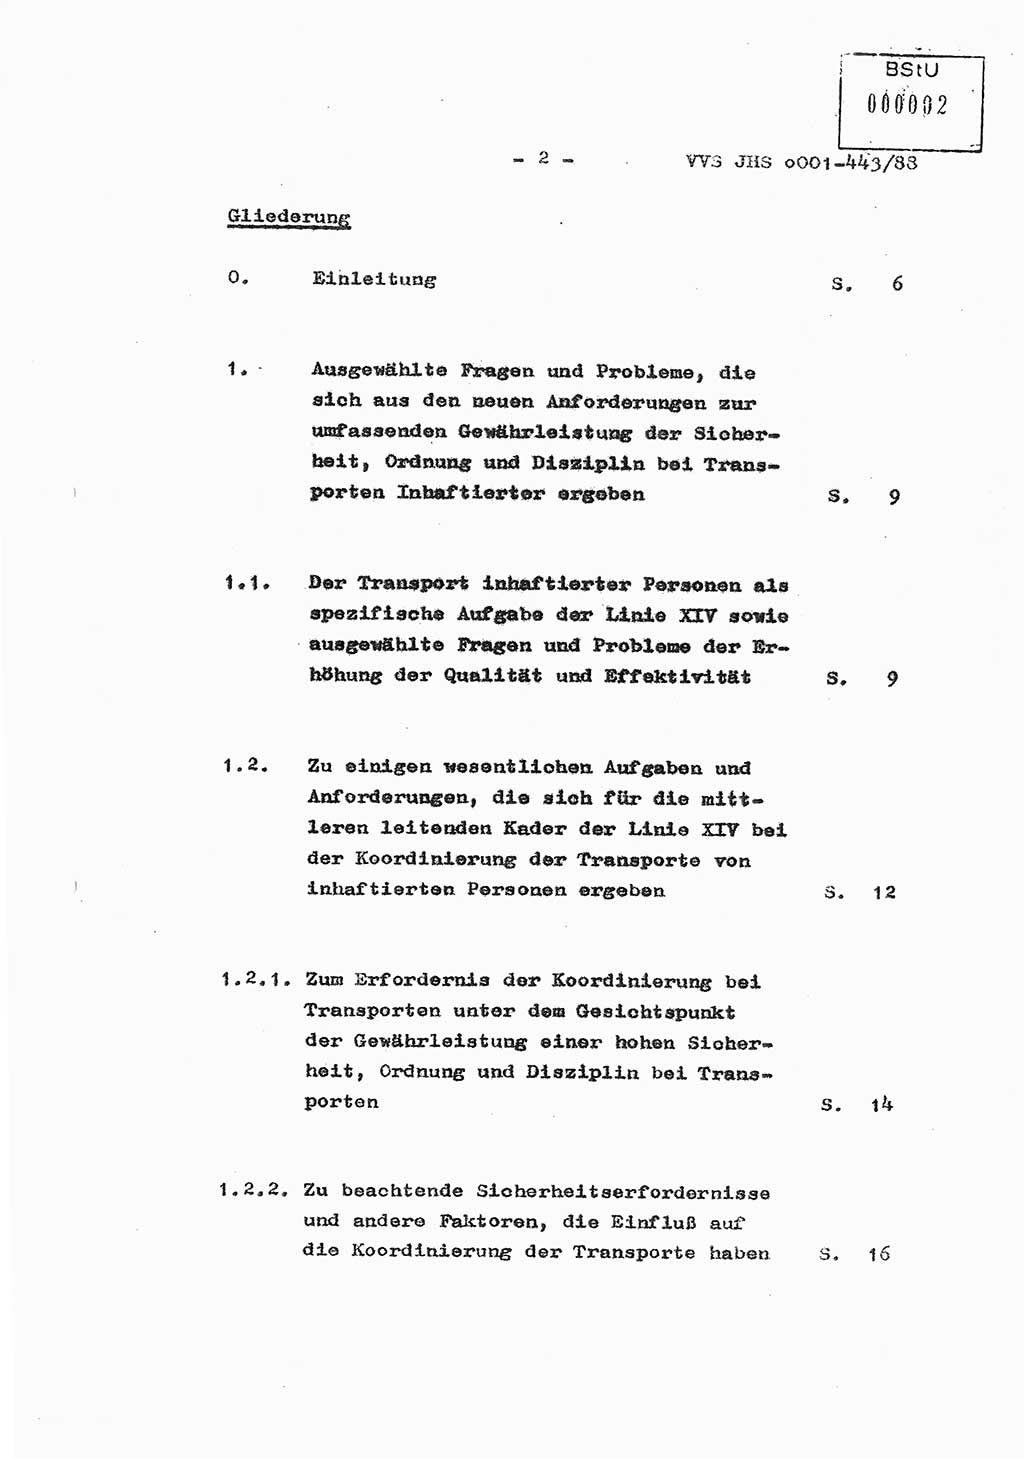 Diplomarbeit Hauptmann Michael Rast (Abt. ⅩⅣ), Major Bernd Rahaus (Abt. ⅩⅣ), Ministerium für Staatssicherheit (MfS) [Deutsche Demokratische Republik (DDR)], Juristische Hochschule (JHS), Vertrauliche Verschlußsache (VVS) o001-443/88, Potsdam 1988, Seite 2 (Dipl.-Arb. MfS DDR JHS VVS o001-443/88 1988, S. 2)